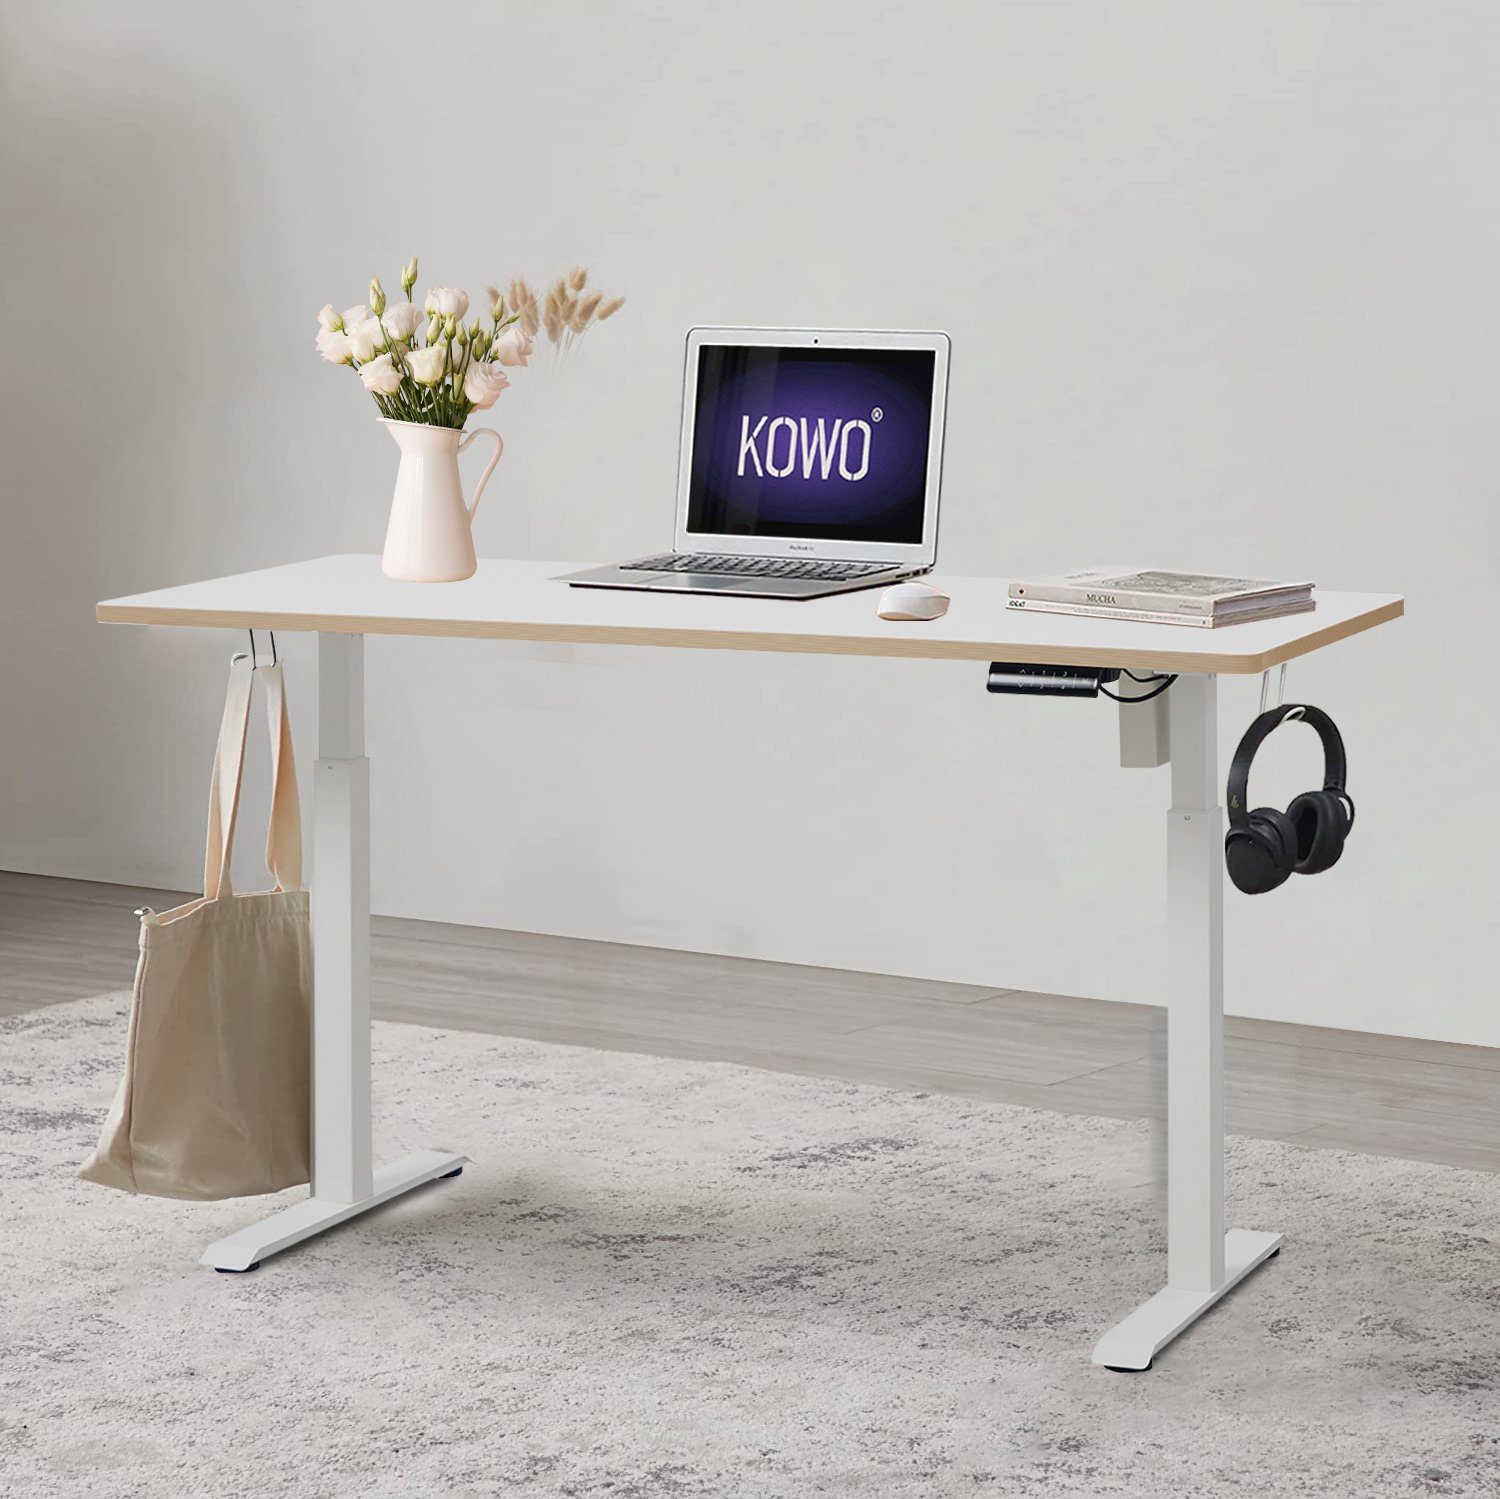 KOWO Schreibtisch Höhenverstellbarer Schreibtisch 160 cm Bürotisch mit Tischgestell, mit USB C Ladegerät und USB Netzteil für iPhone, iPad, MacBook, Handy Weiß